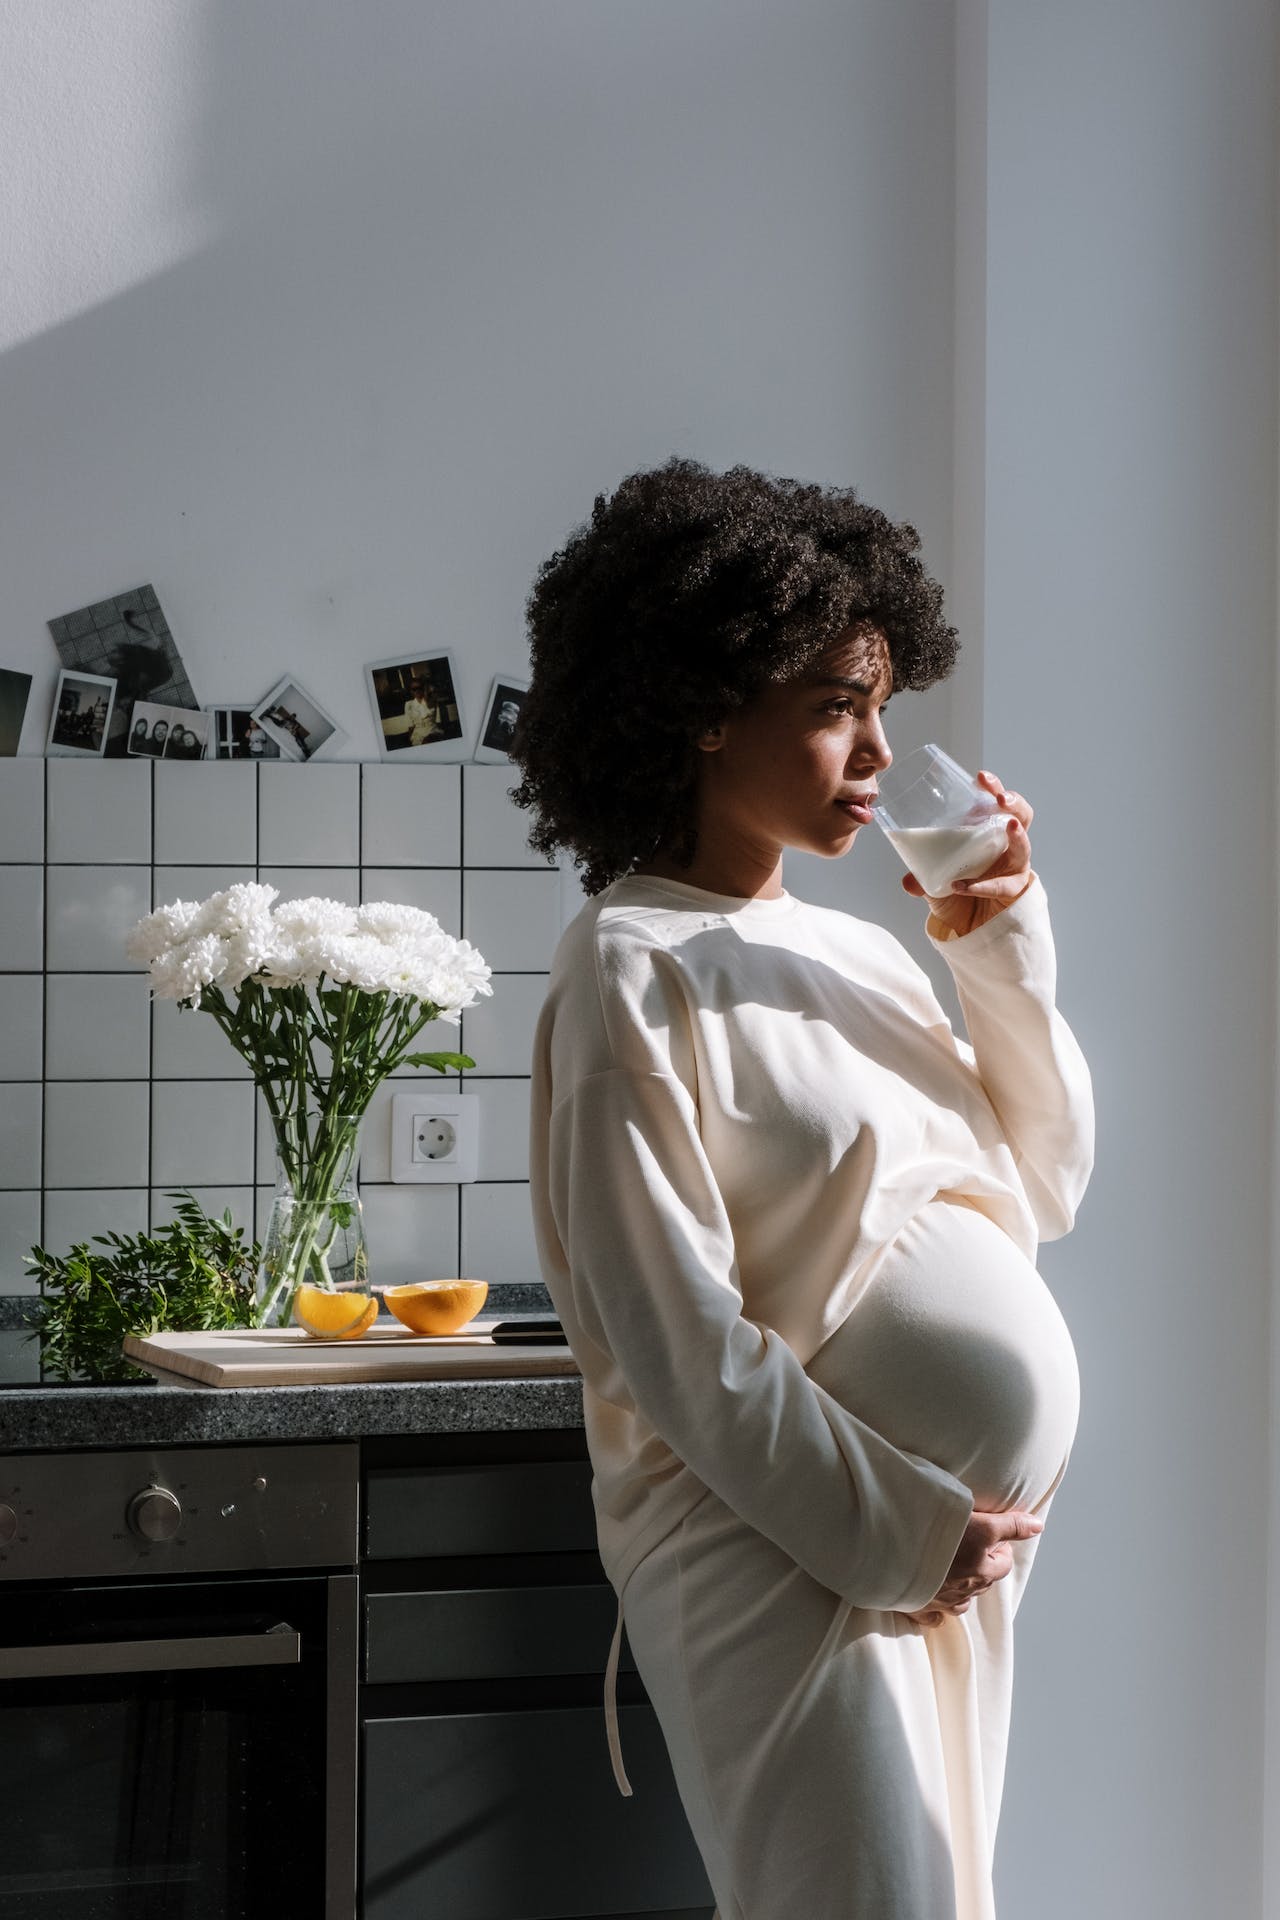 Что означает сон, в котором ты беременна?